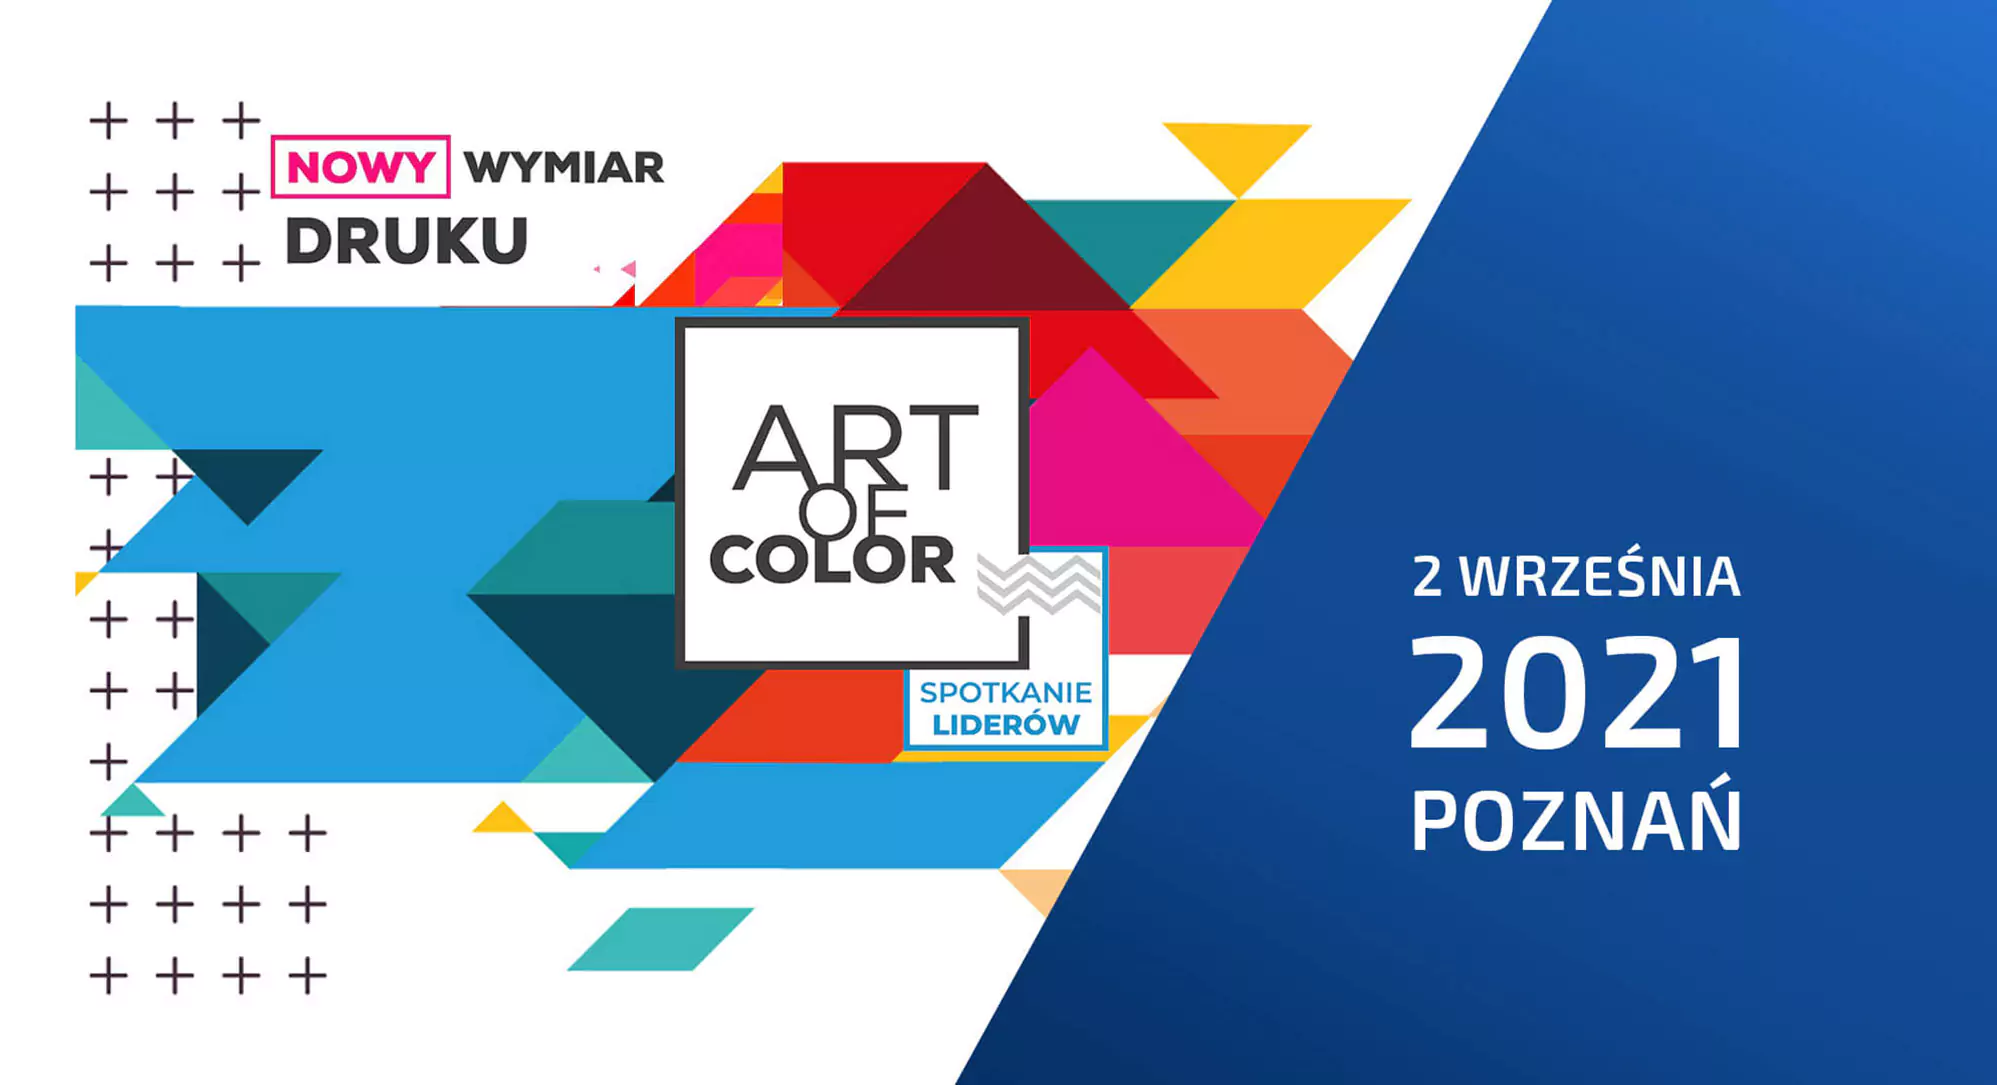 Art of Color - spotkanie liderów w Poznaniu